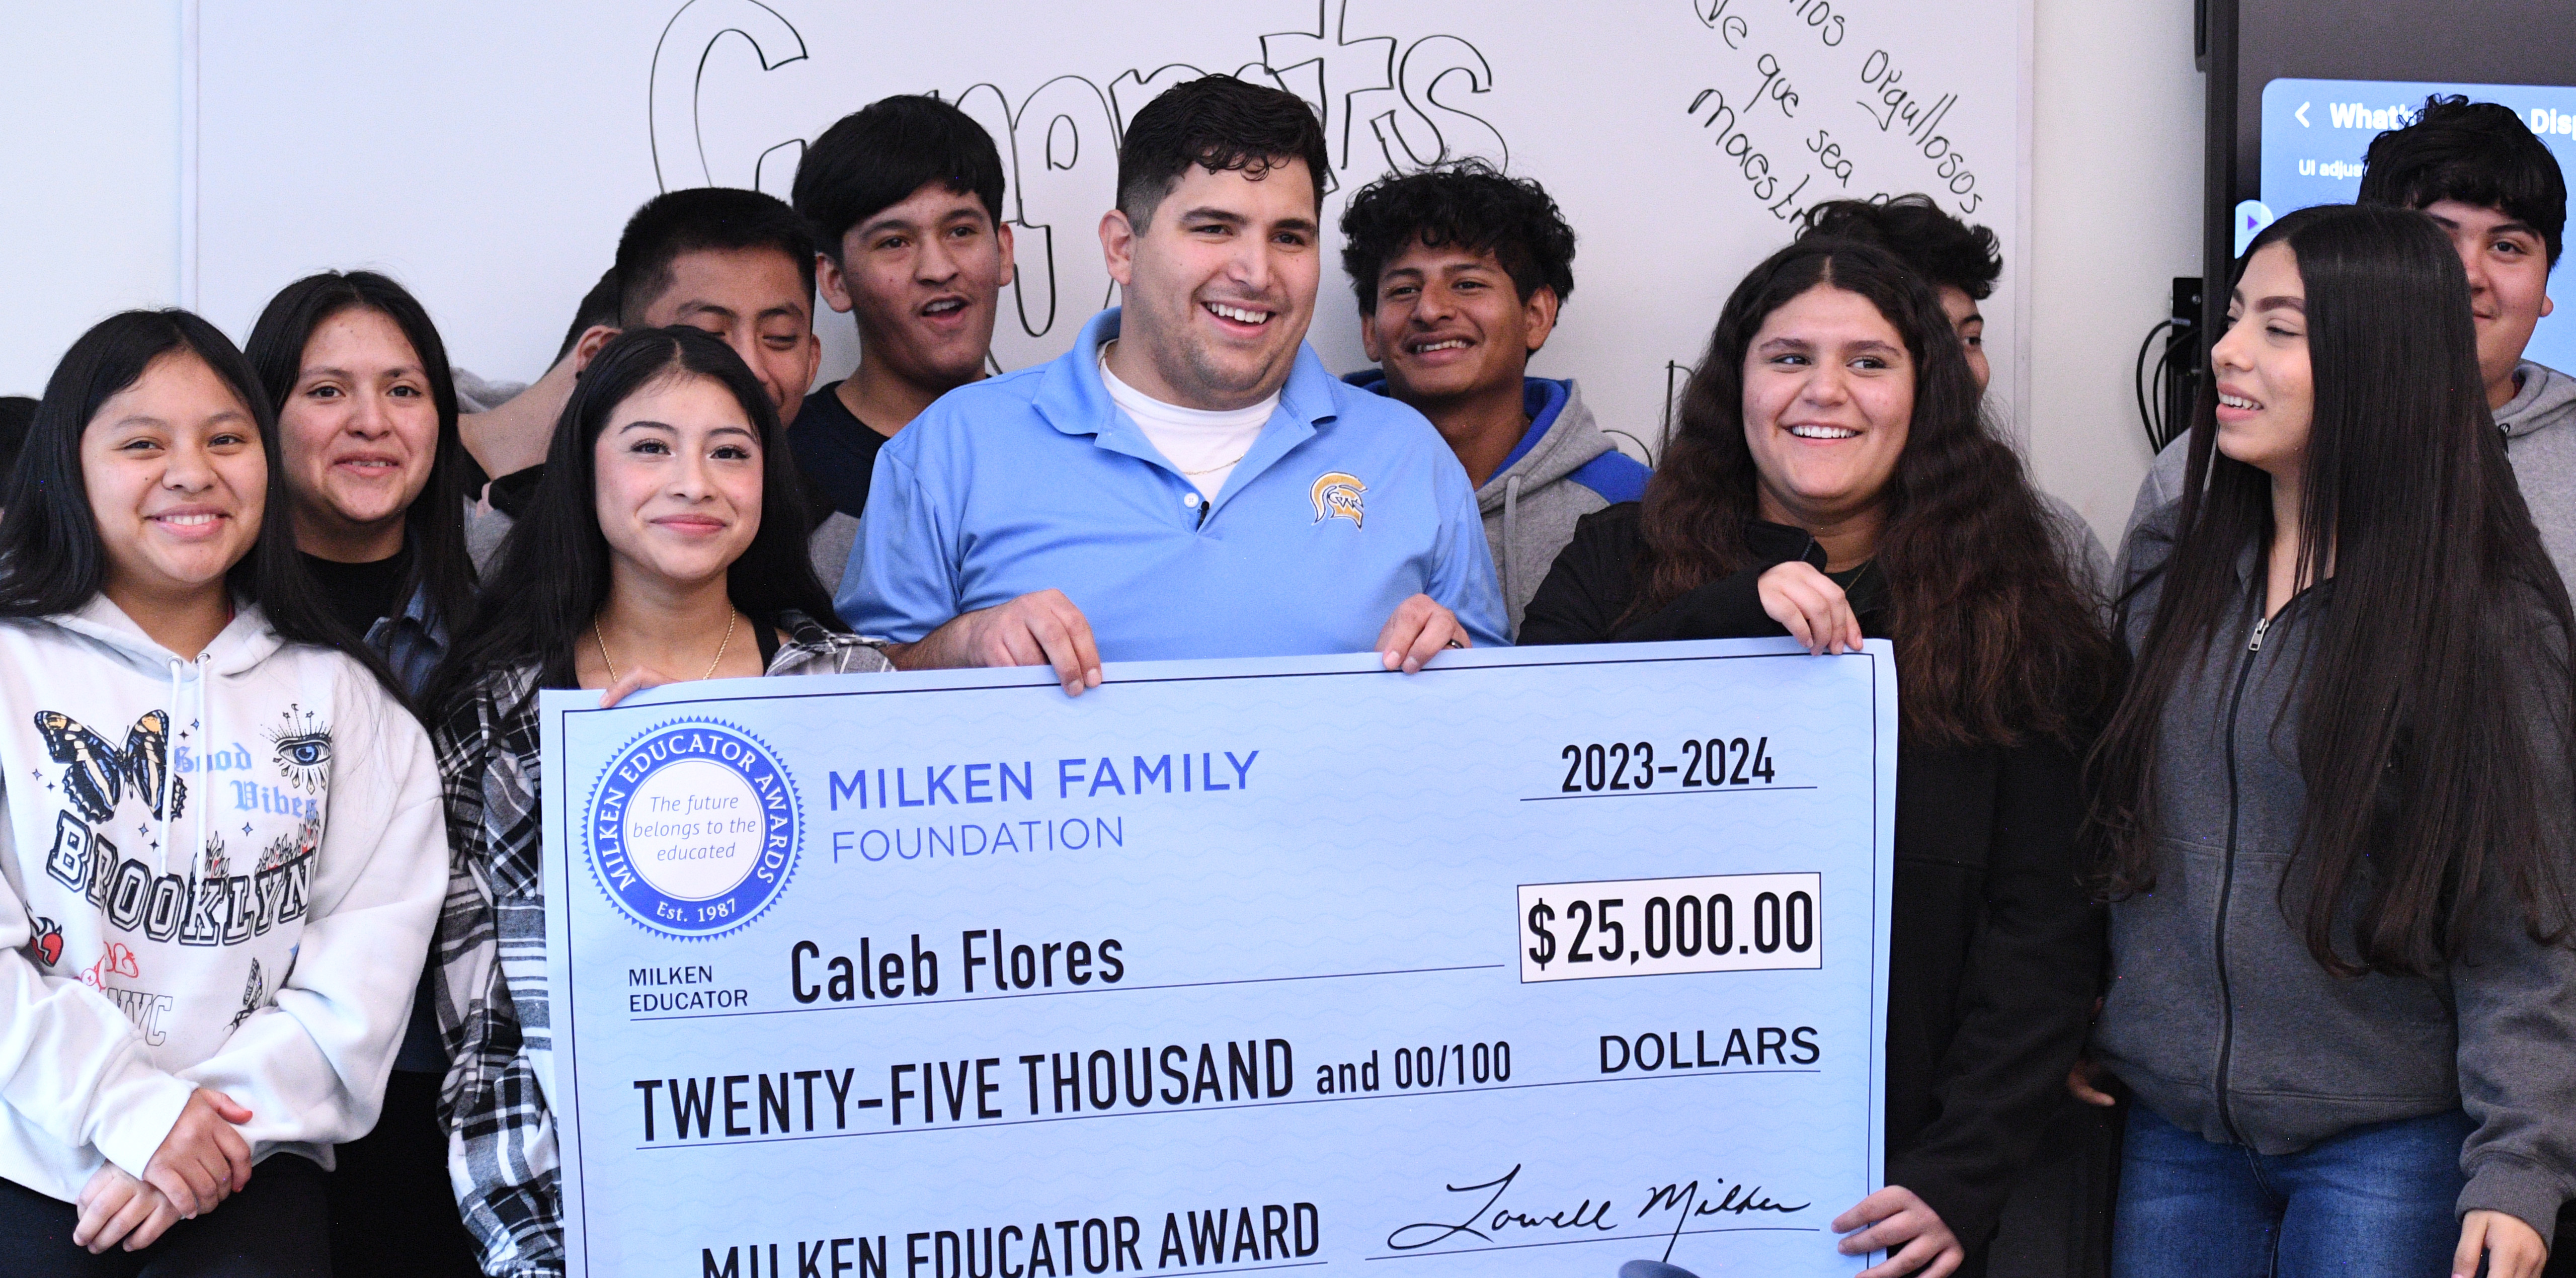 Caleb Flores recibiendo el premio Milken